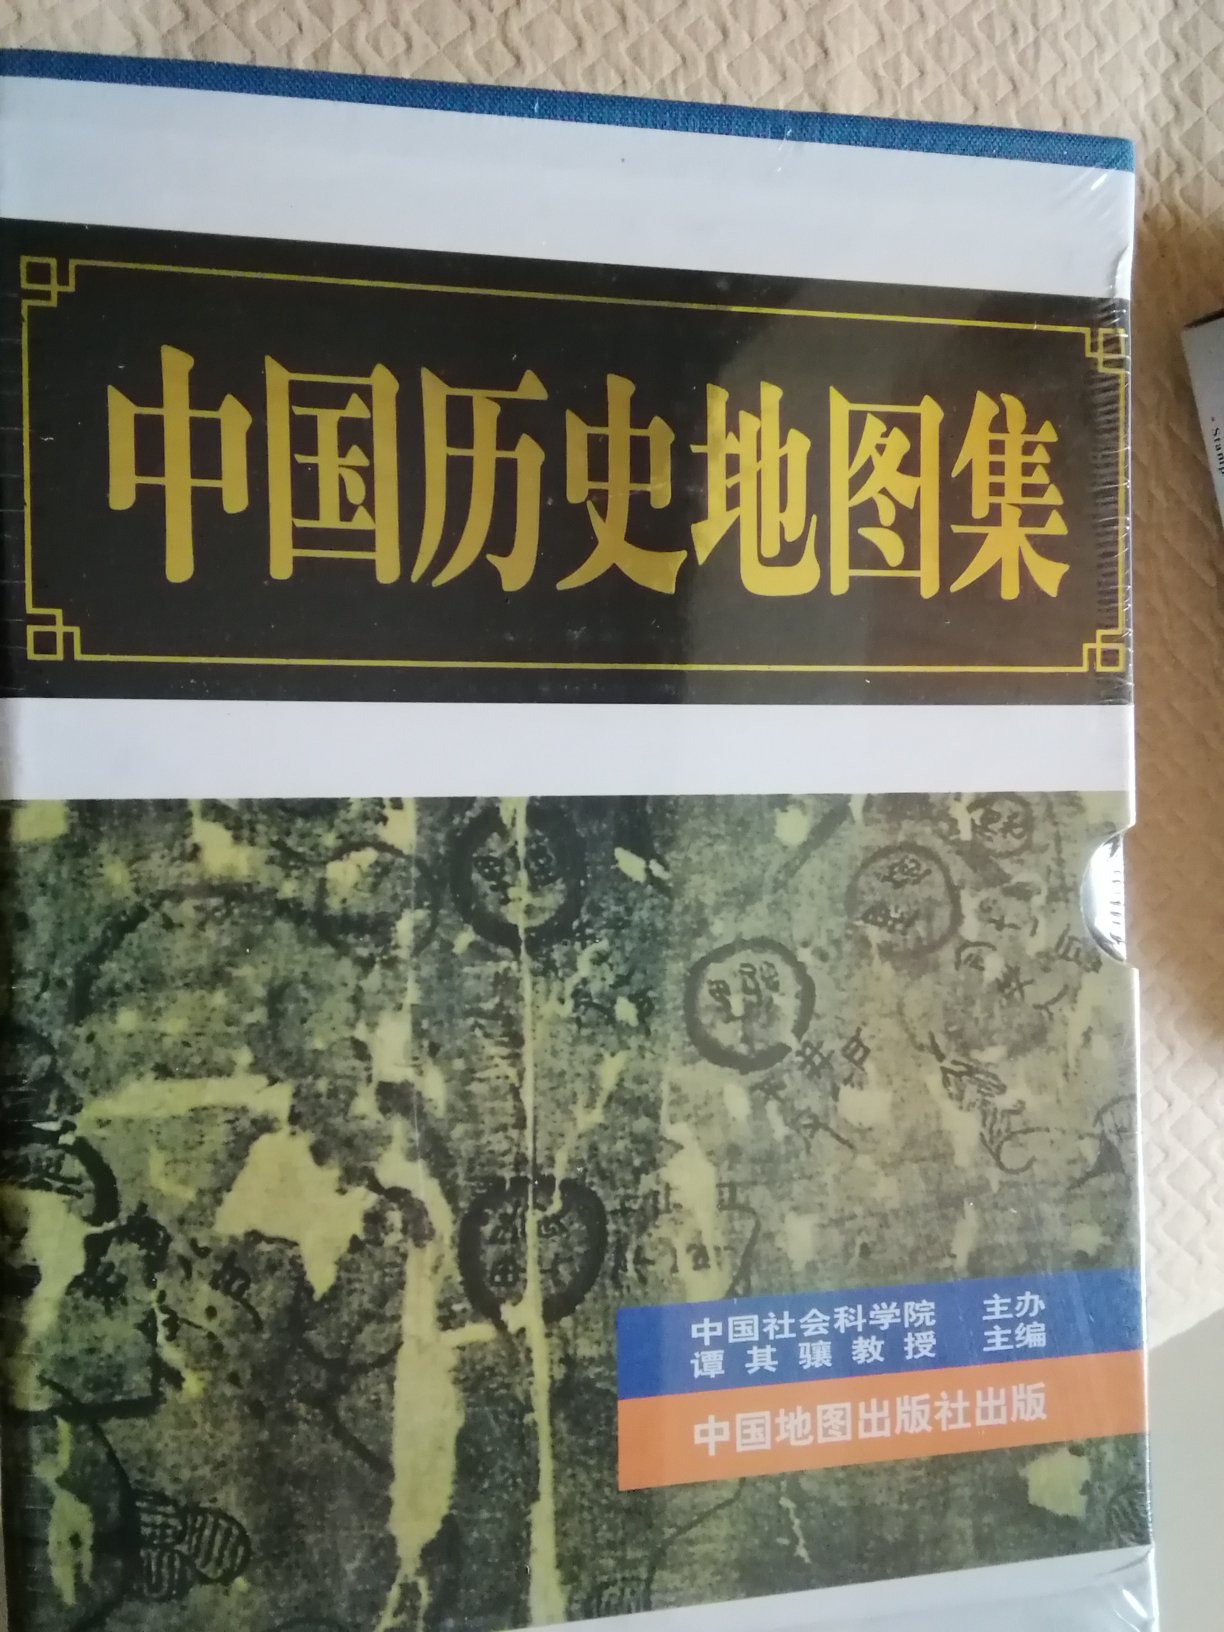 运送速度非常快。谭其骧主编的《中国历史地图集》非常具有收藏价值。